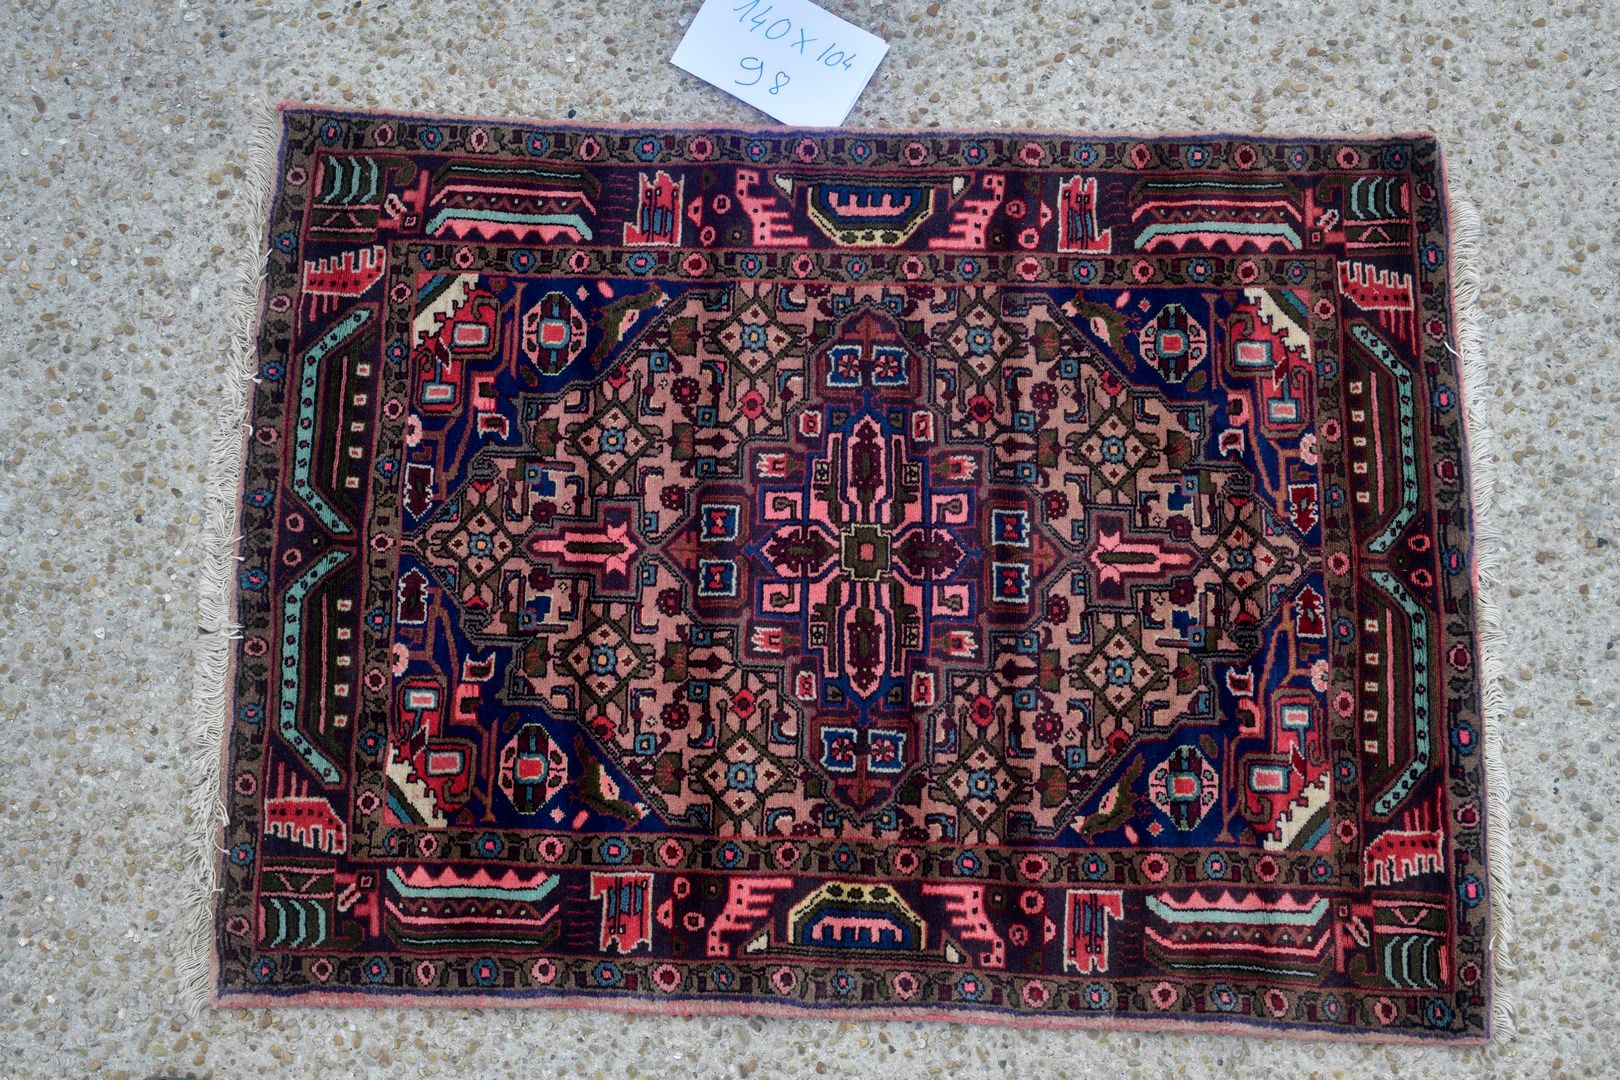 Null 纳哈万（伊朗），1980年。

羊毛天鹅绒，棉质基础。

在古老的粉红色场地上有几何花纹装饰。

状况良好。

140x104厘米